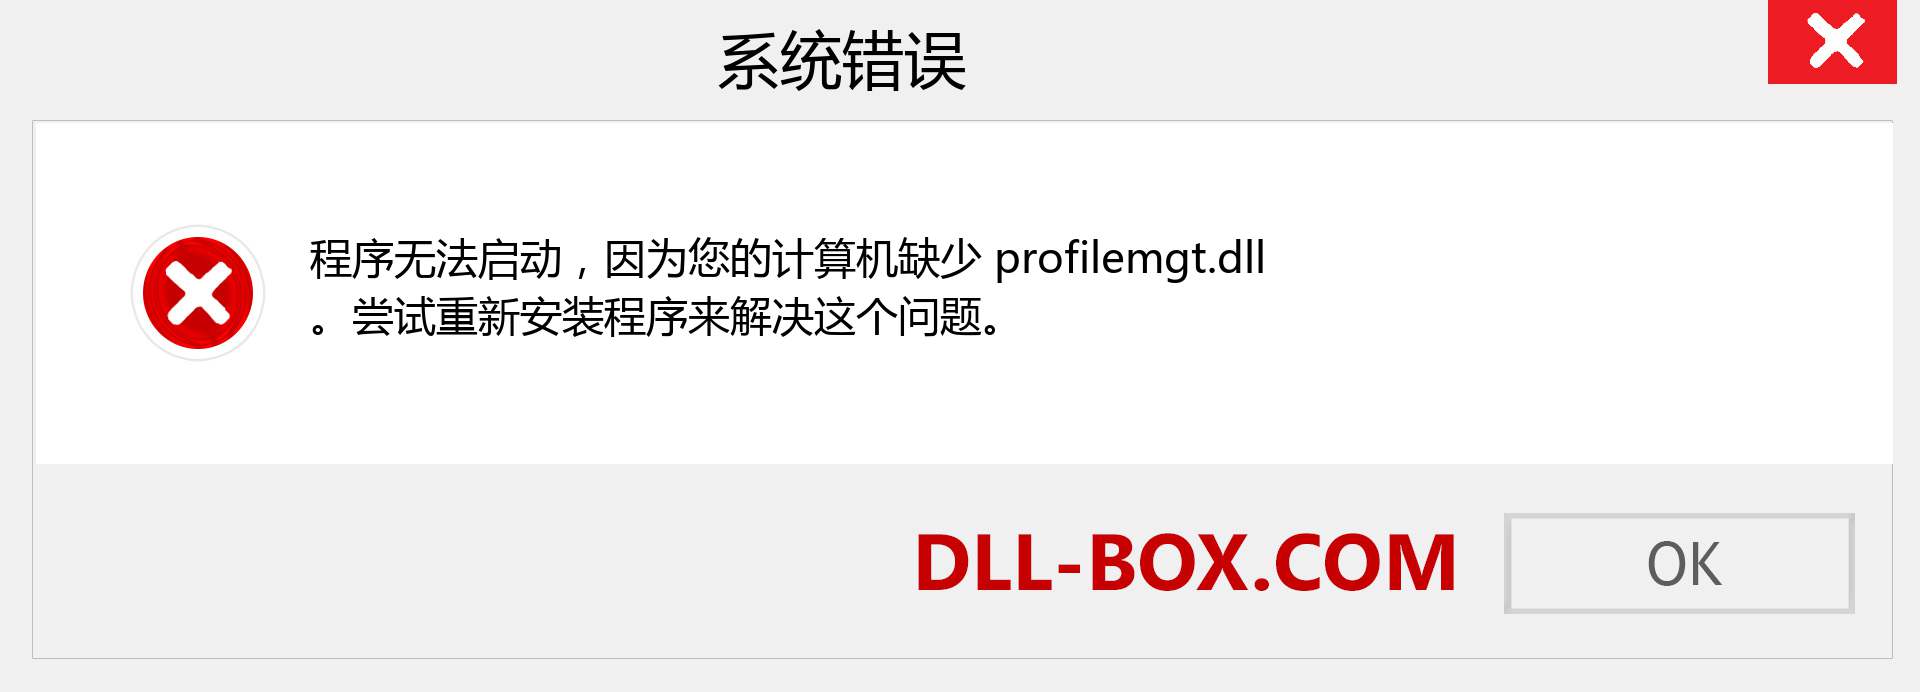 profilemgt.dll 文件丢失？。 适用于 Windows 7、8、10 的下载 - 修复 Windows、照片、图像上的 profilemgt dll 丢失错误